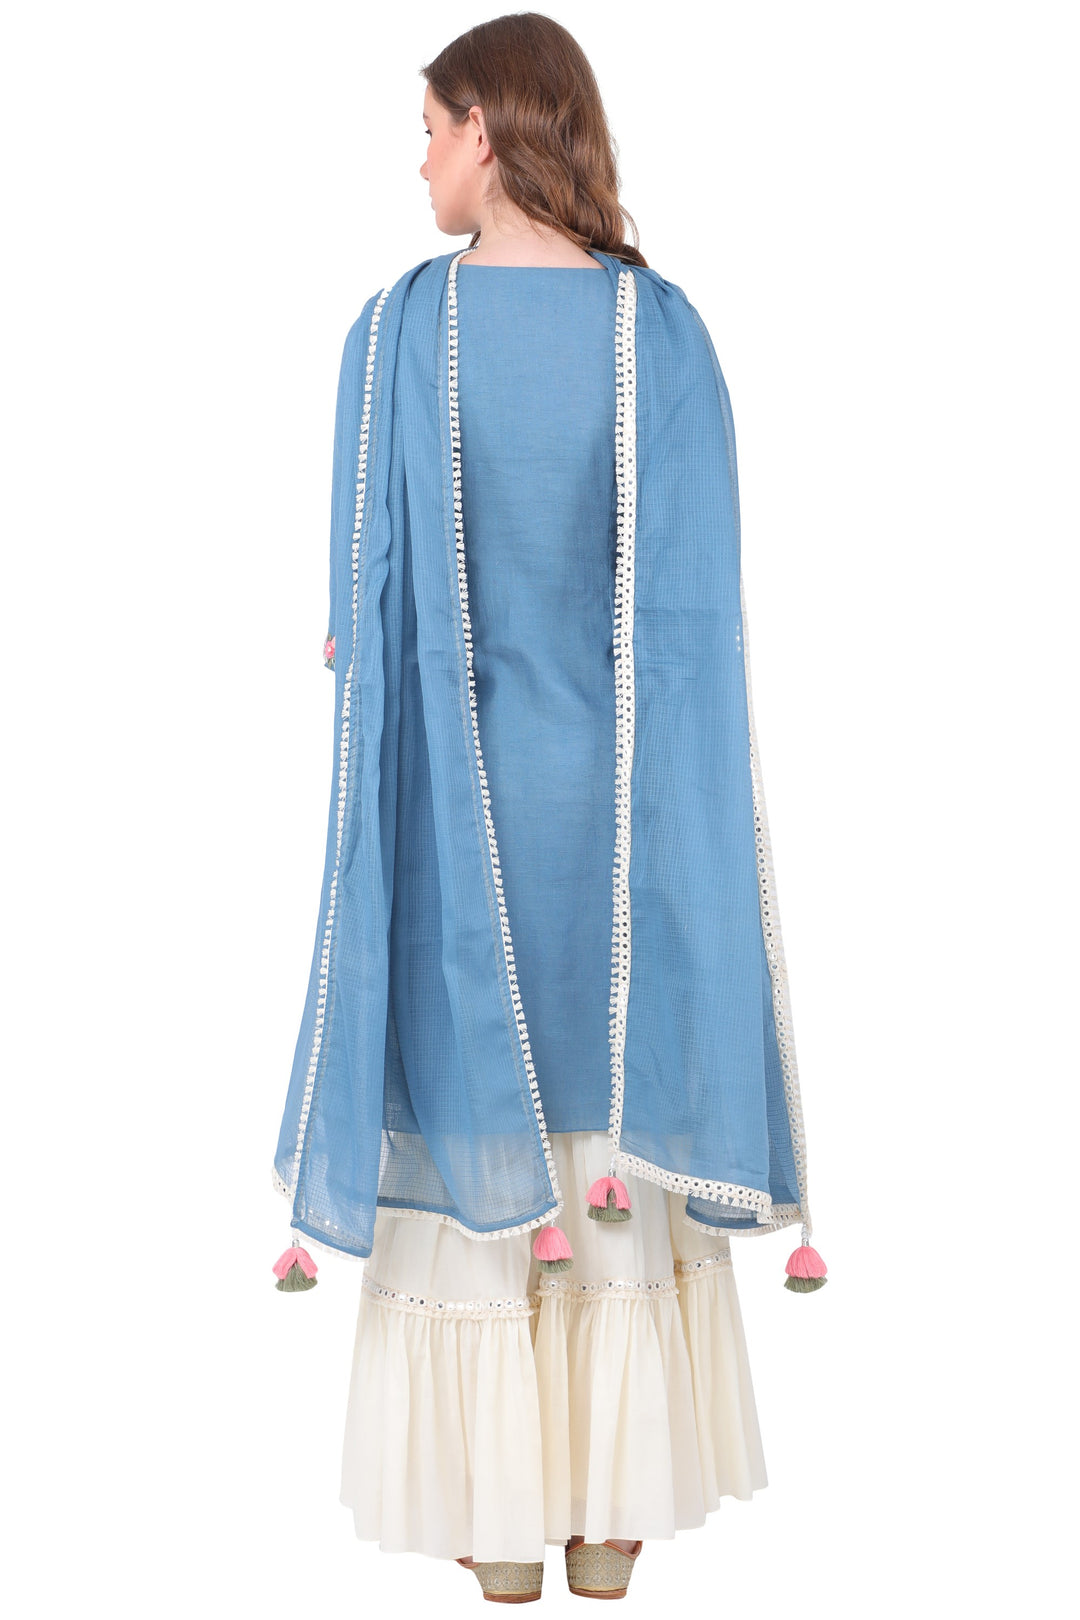 Blue Ribbon Garara set for women in cotton fabric back view